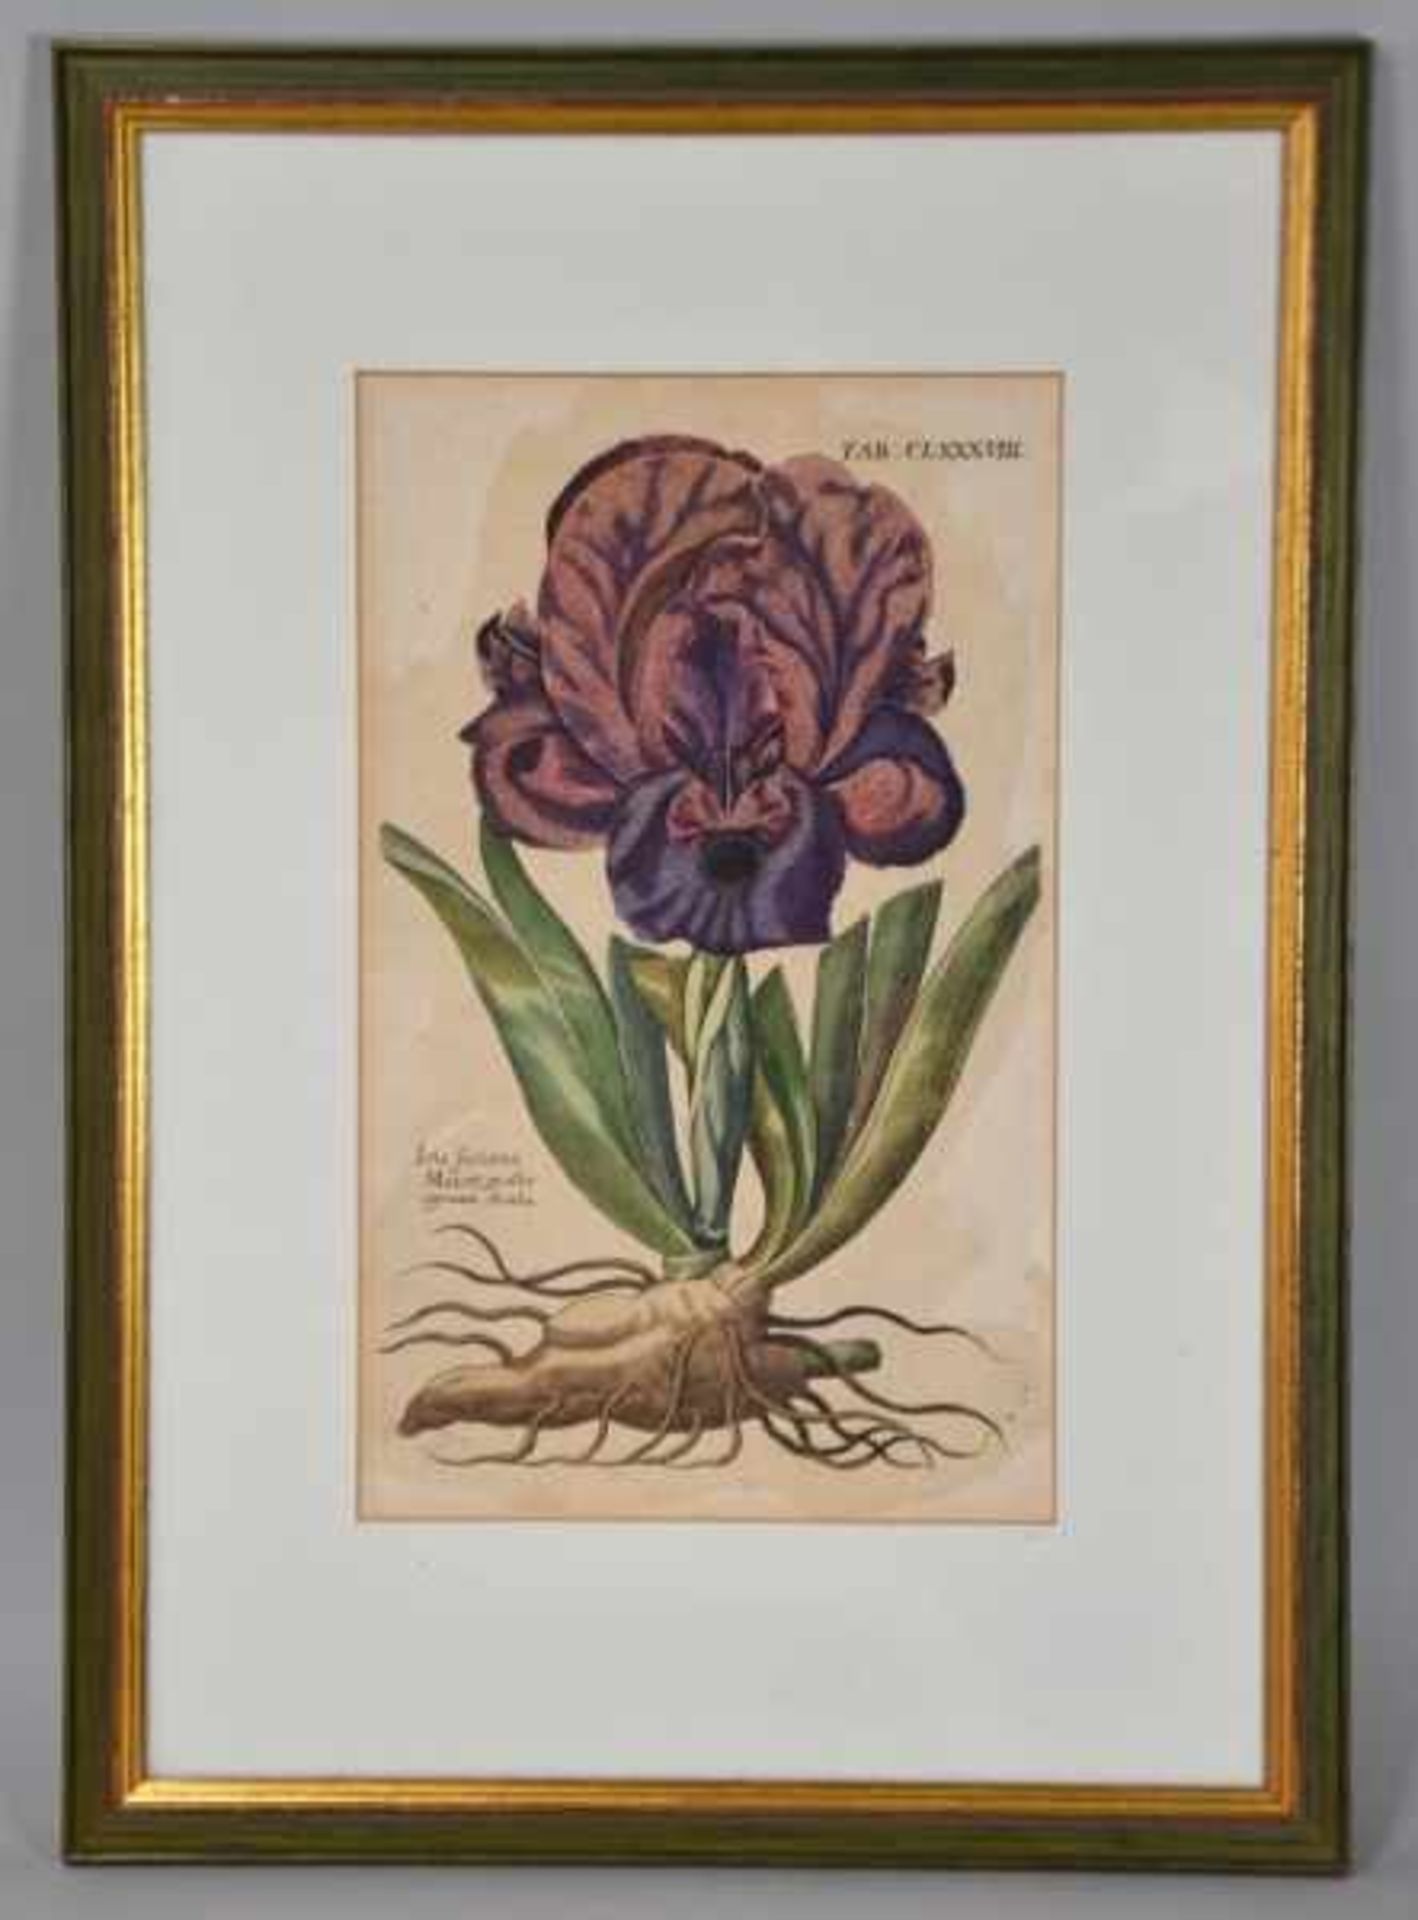 DE BRY Theodor (1528 Frankfurt- 1598 Lüttich) "Iris", farbiger Kupferstich einer Iris mit Knolle, - Bild 2 aus 2